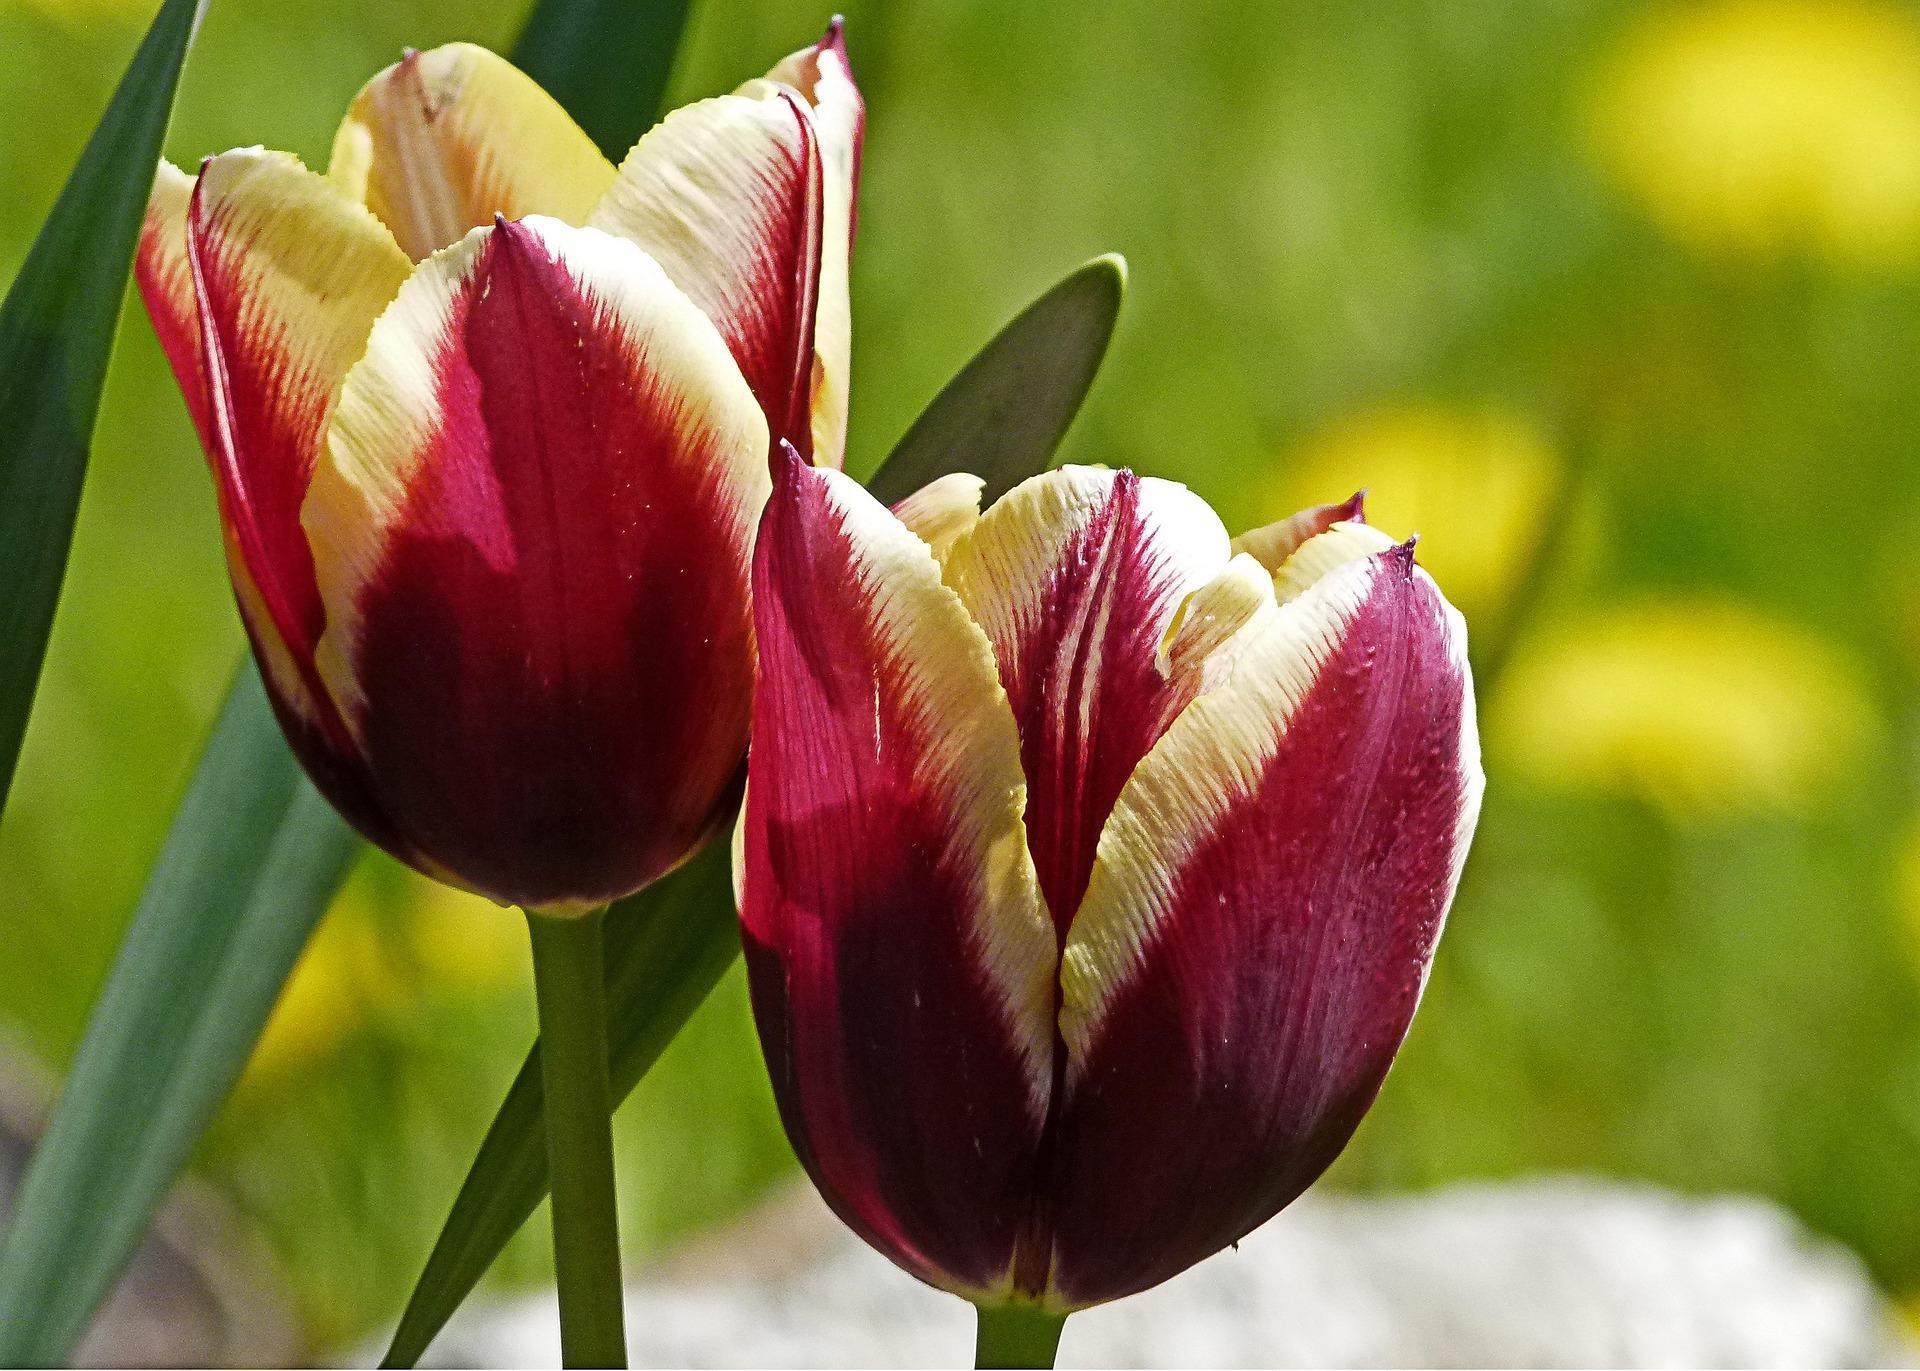 Tulip Triumph 'Gavota' - Tulip from Leo Berbee Bulb Company